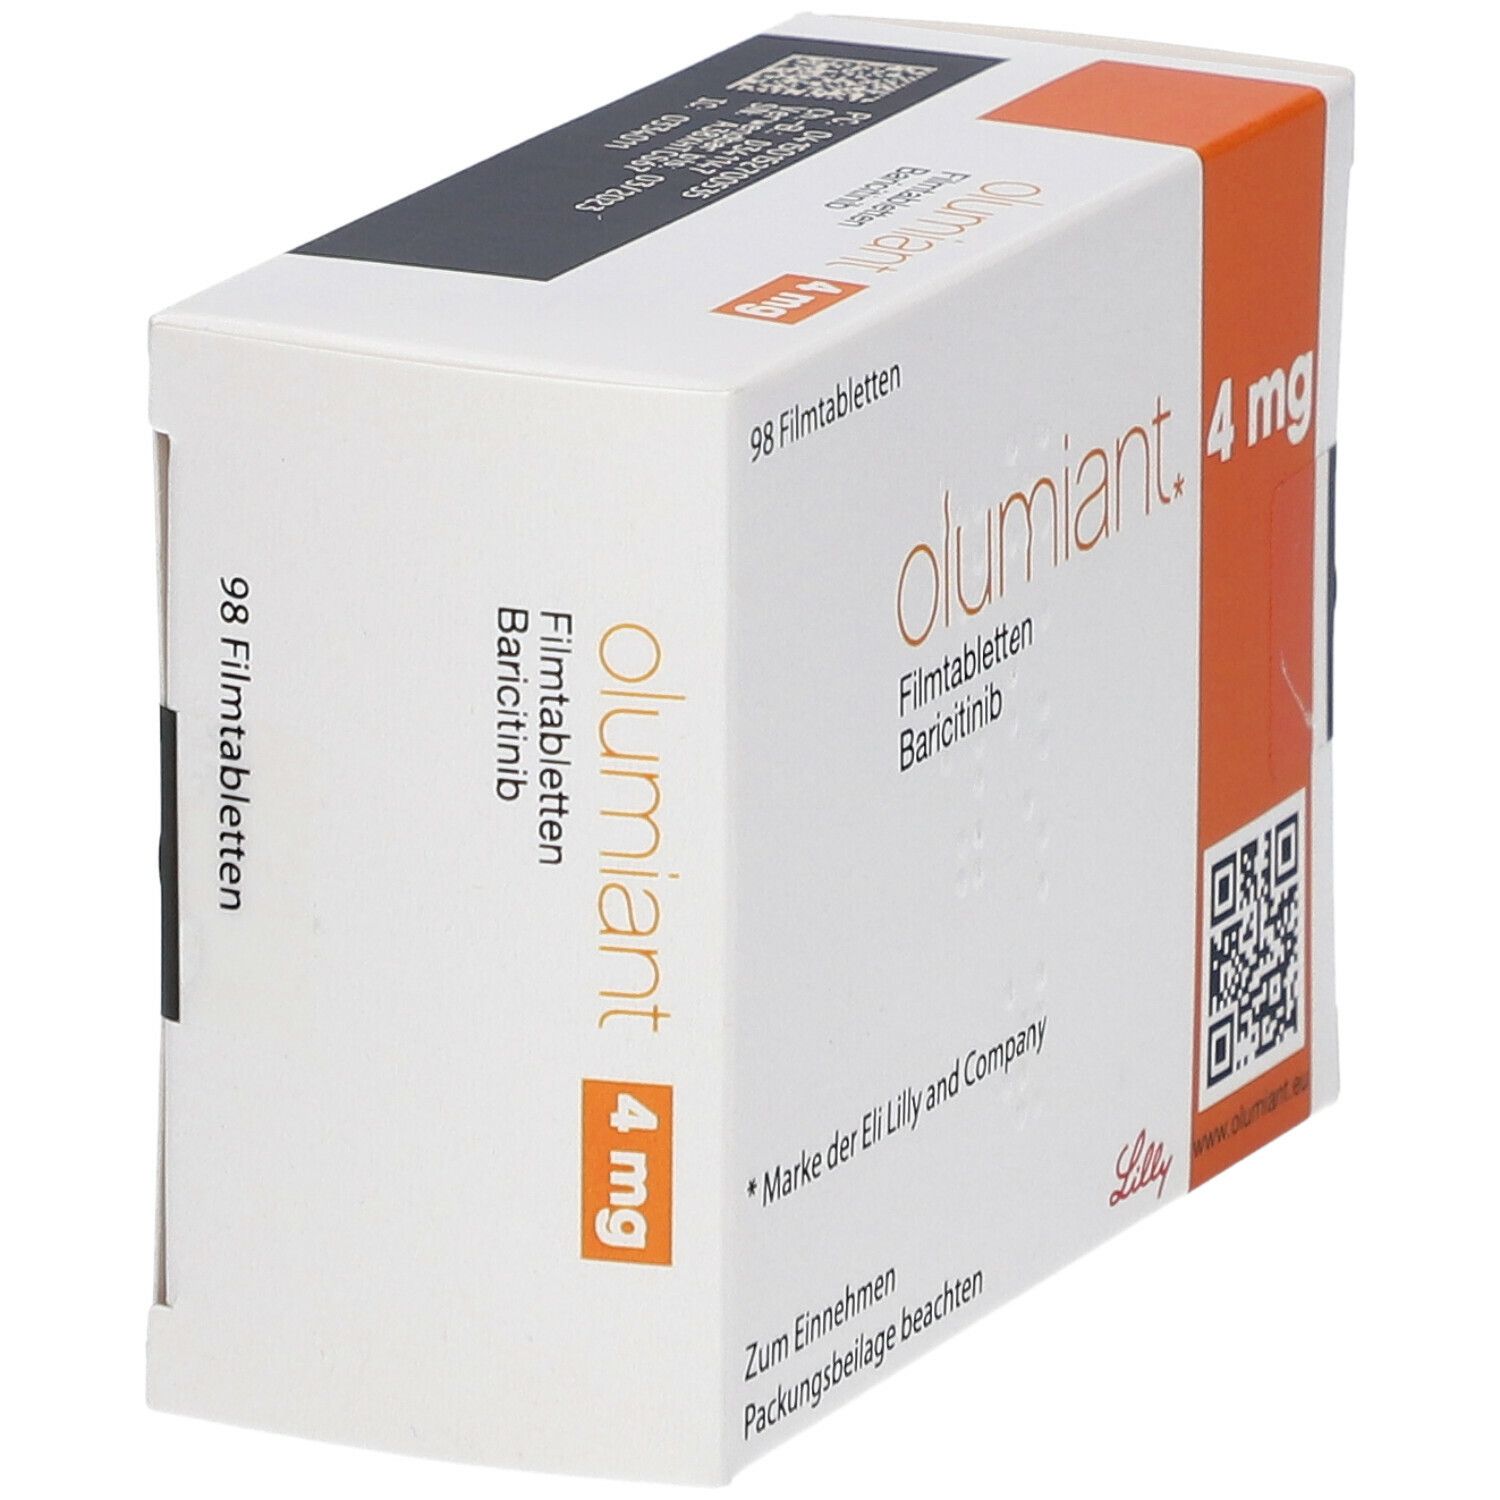 Olumiant 4 mg